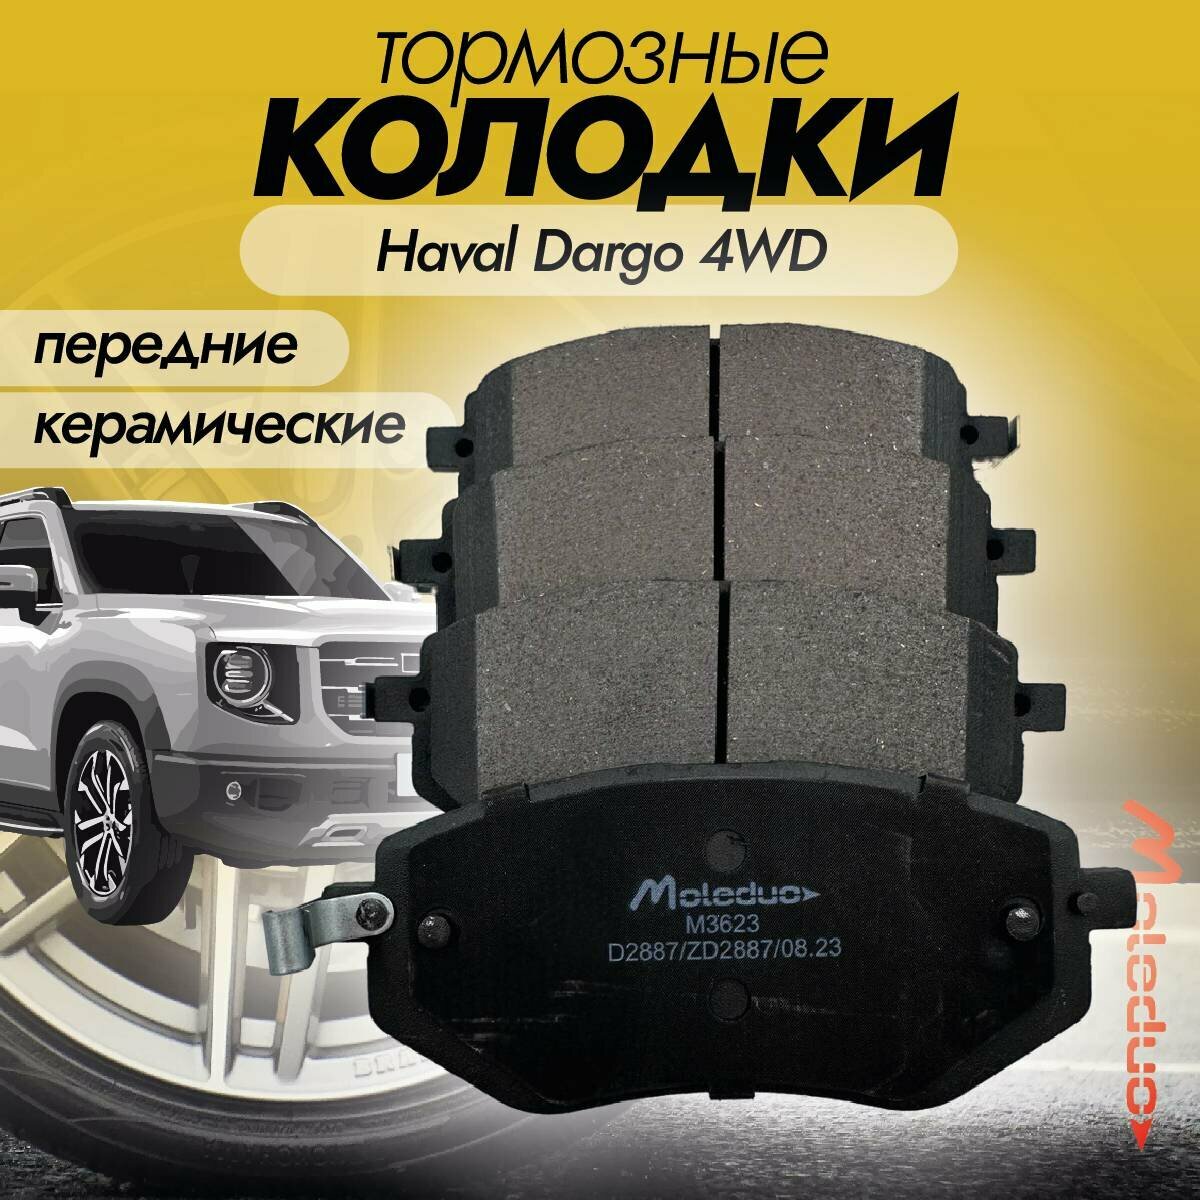 Колодки тормозные передние керамические Moleduo M3623 для Haval Dargo (Дарго) 4WD